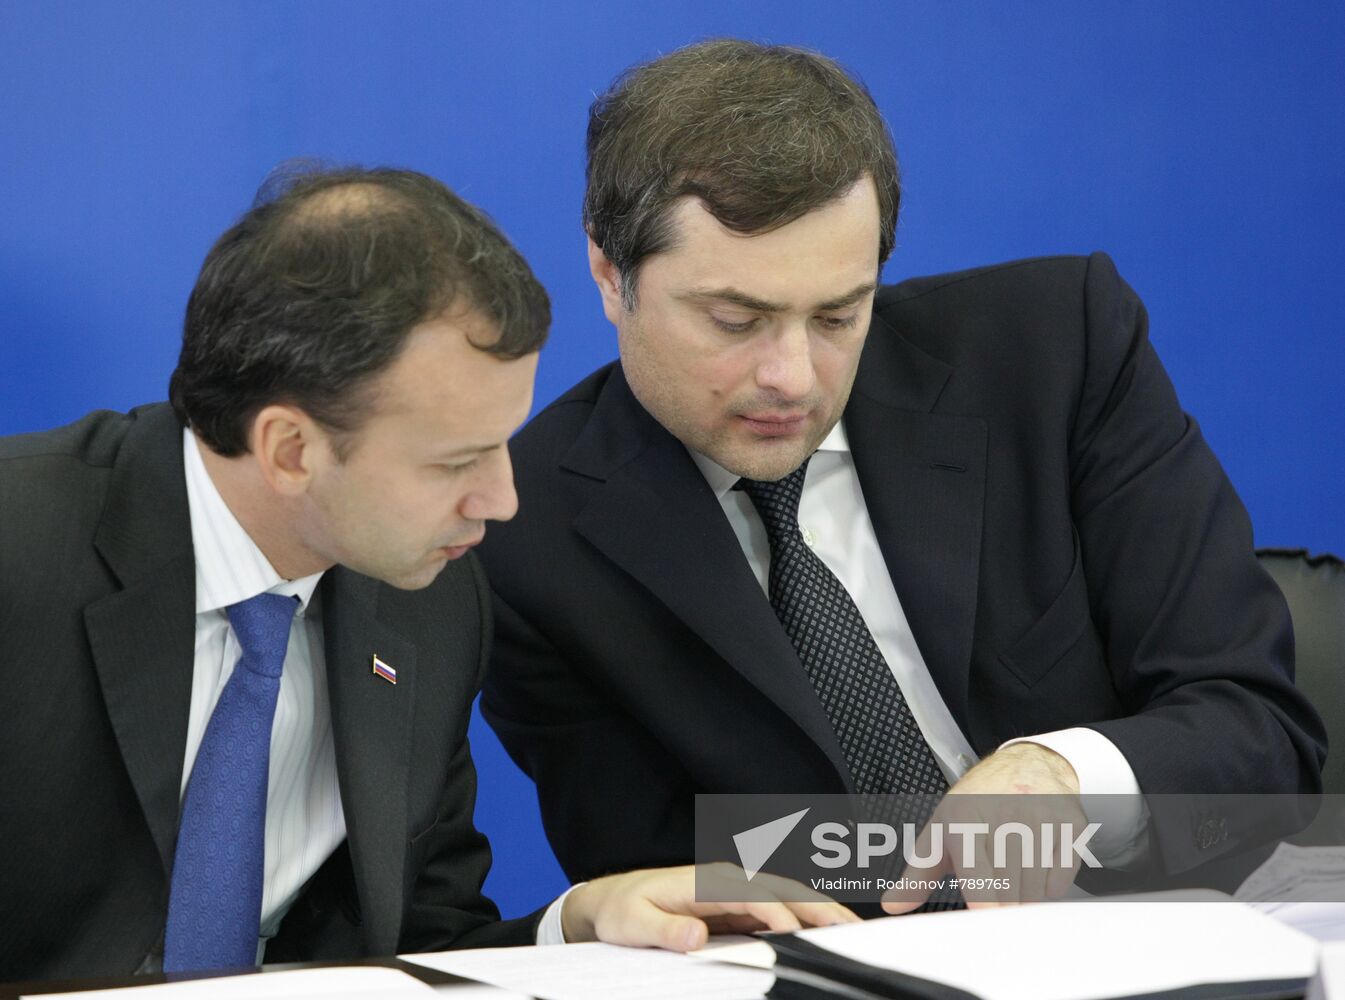 Arkady Dvorkovich and Vladislav Surkov